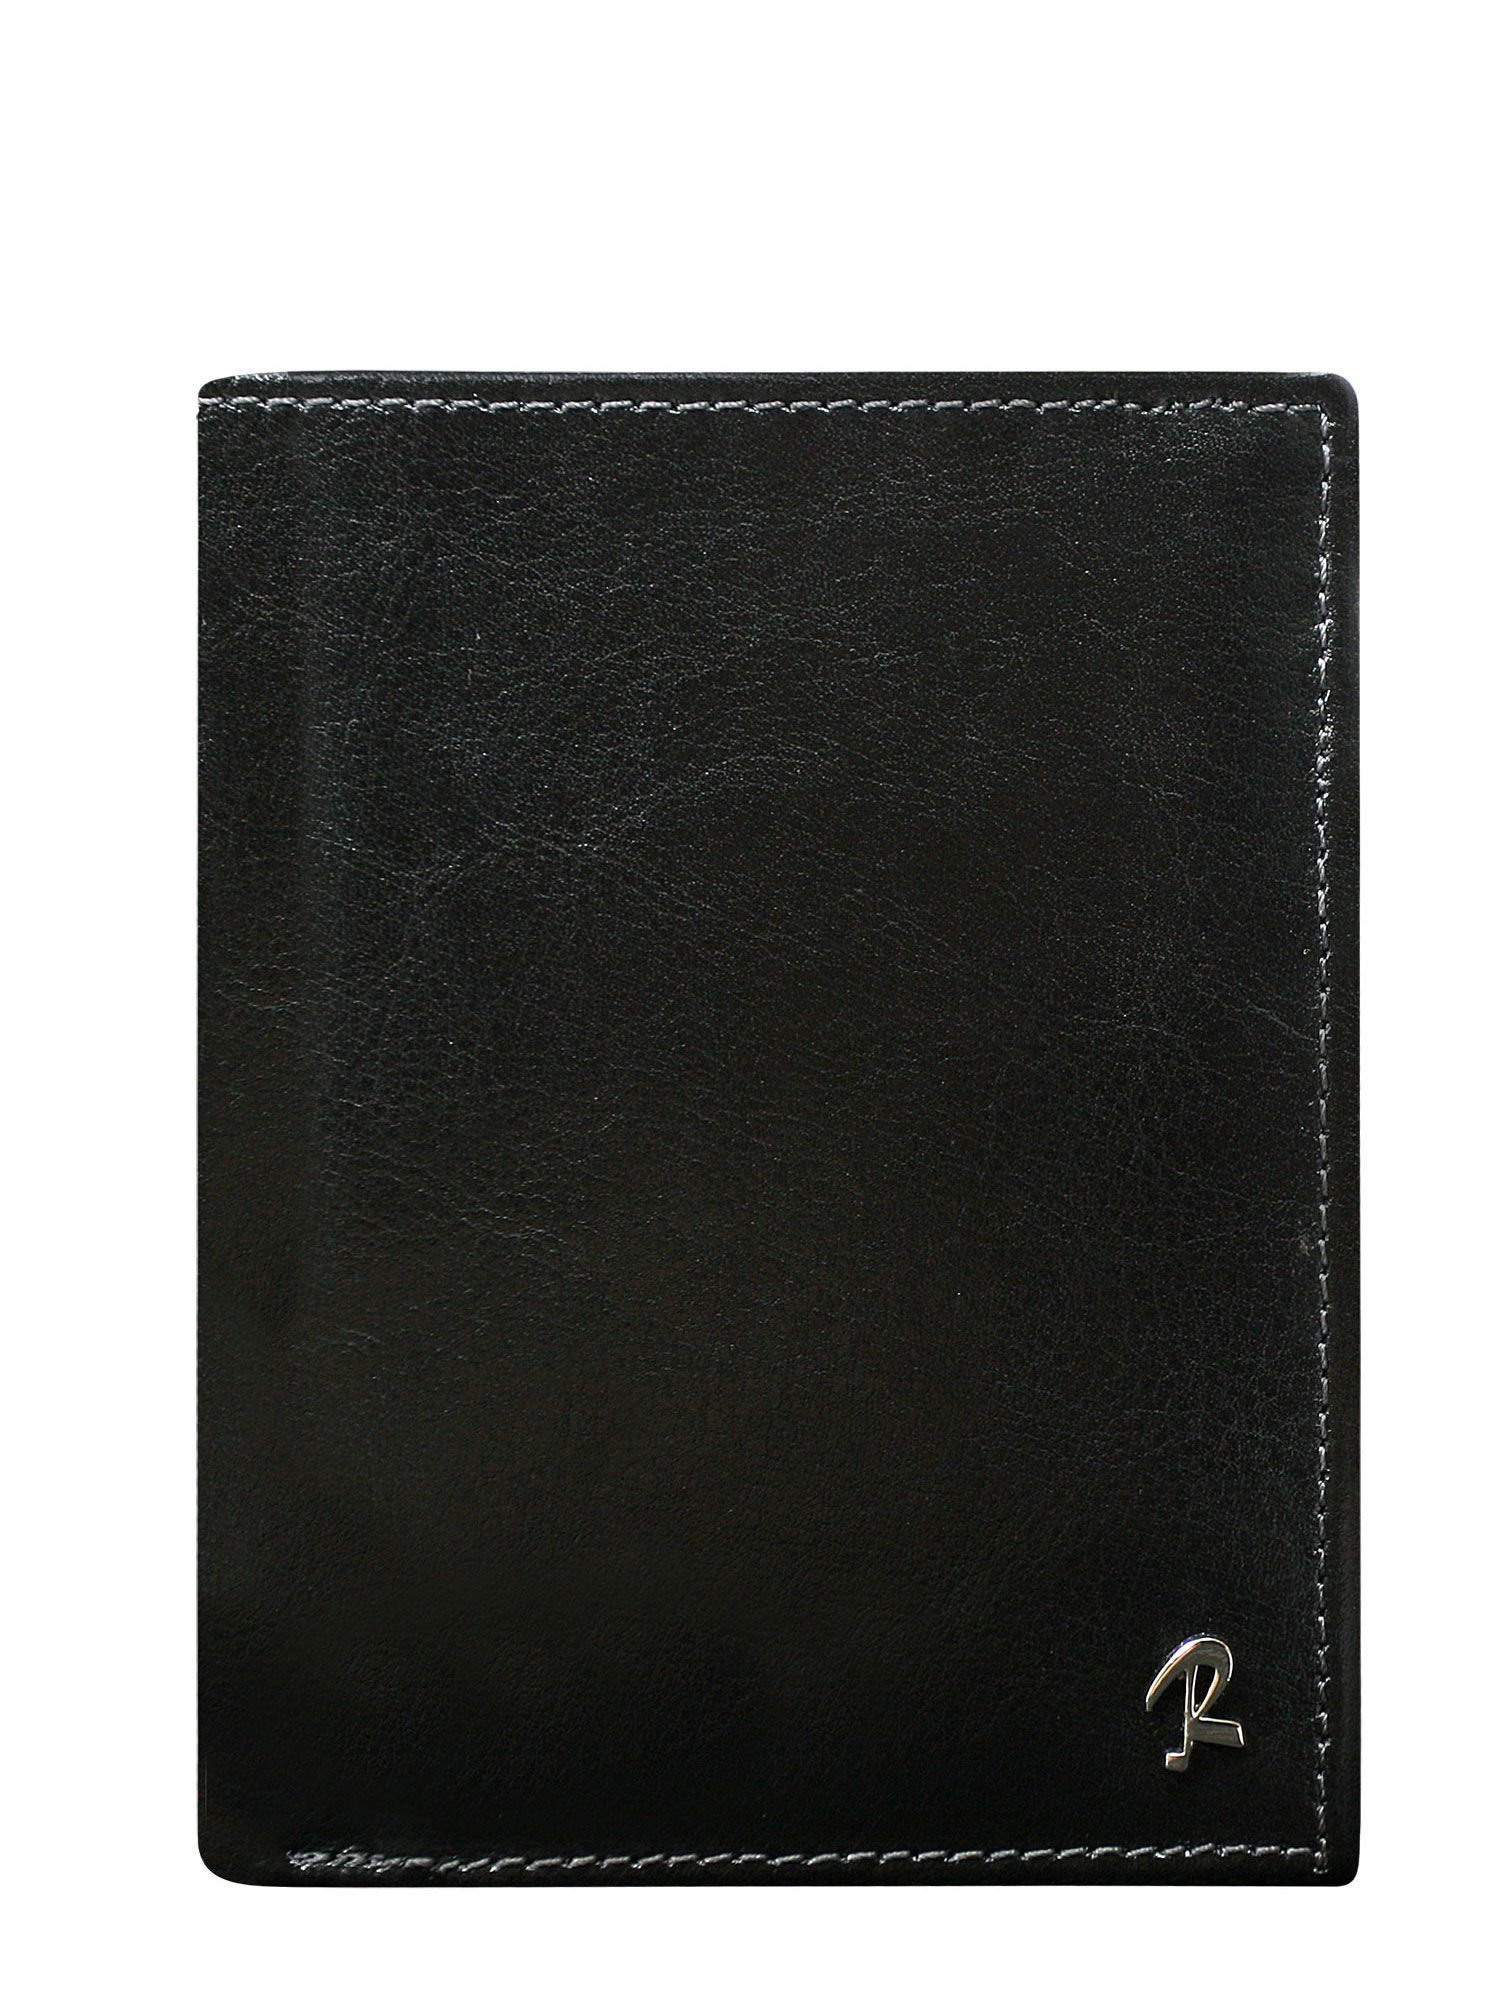 Peněženka CE PR černá jedna velikost model 14834626 - FPrice